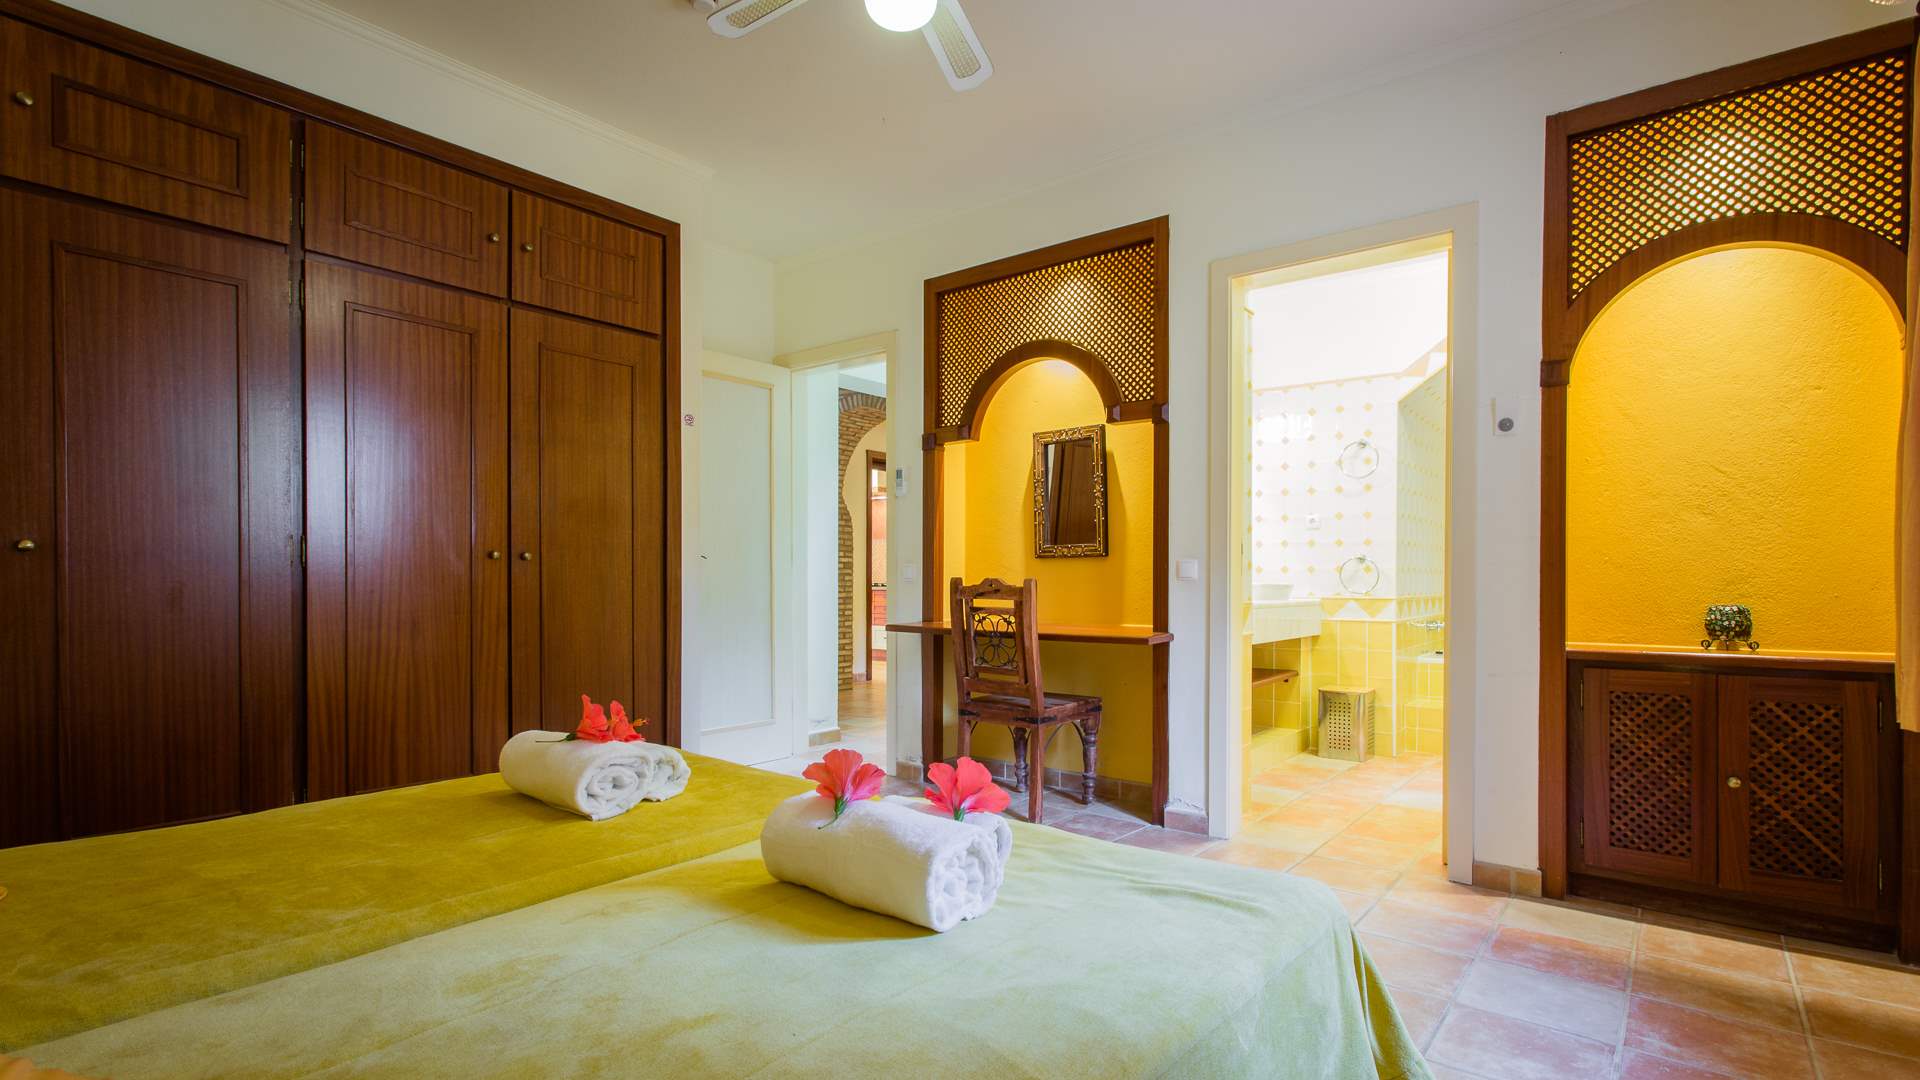 Casa Mouraria, 7 Bedrooms Rate, 7 bedroom villa in Carvoeiro Area, Algarve Photo #24